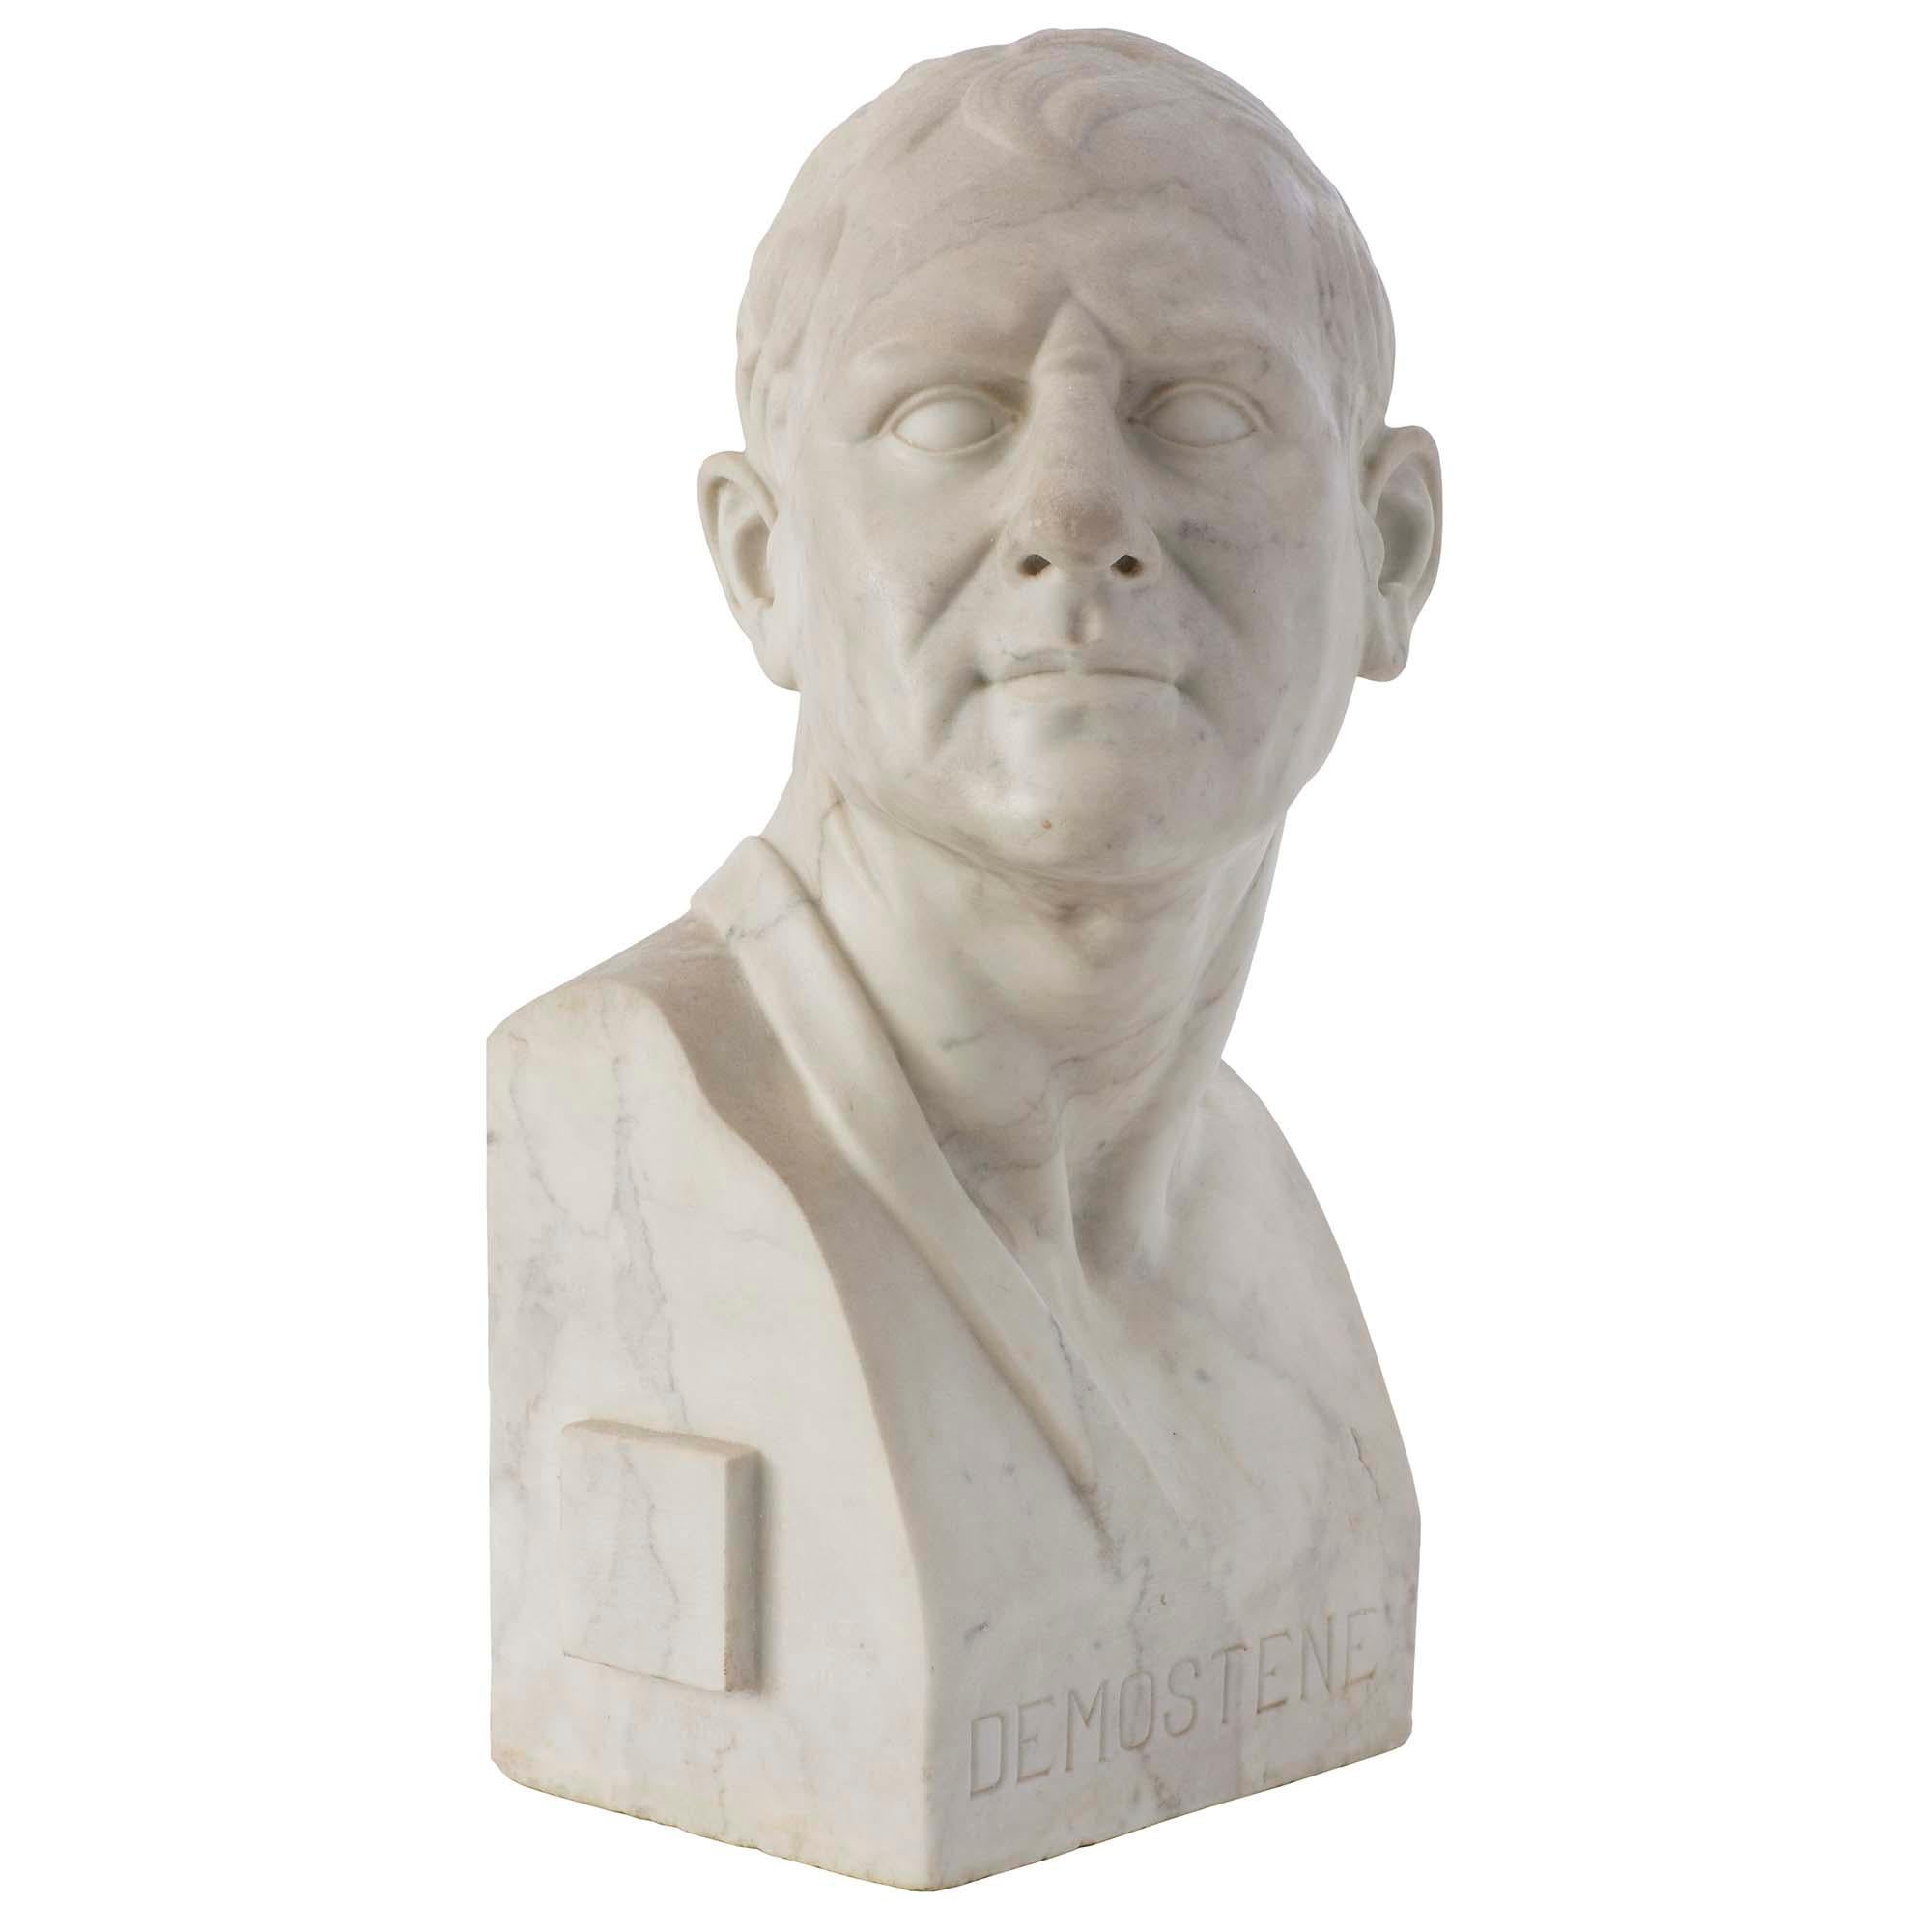 Eine schöne und reich geschnitzte Büste von Demostene aus weißem Carrara-Marmor aus dem 19. Jahrhundert. Die Statue ist aus einem massiven Stück weißen Carrara-Marmors gemeißelt und trägt auf der Vorderseite den Namen der Person. Mit wunderbaren